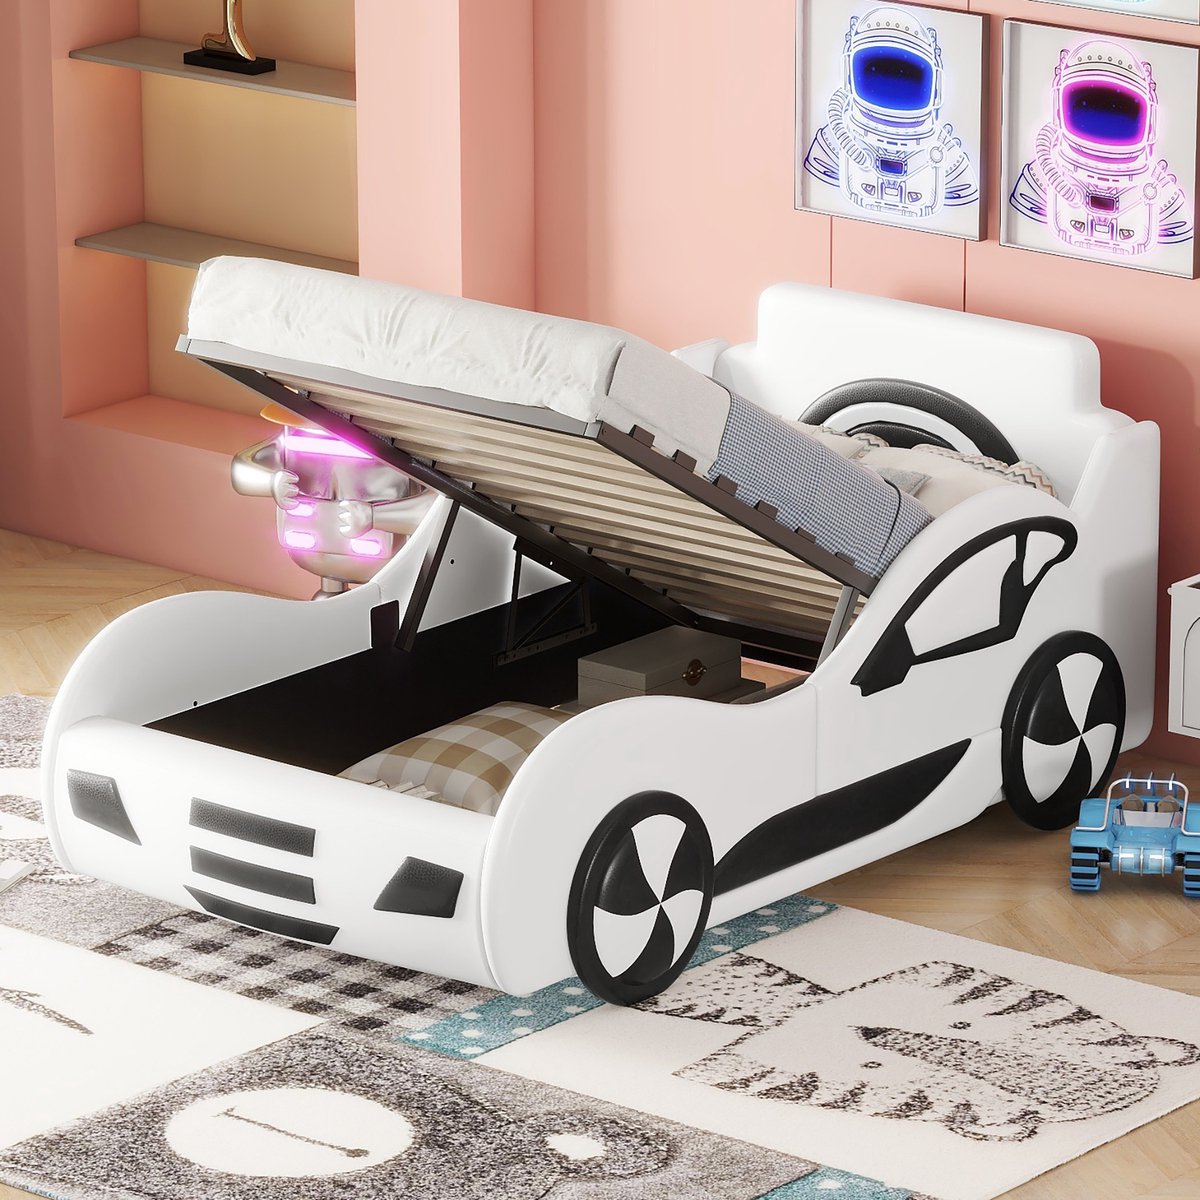 Model autobed - autobed 90 x 200 plat bed - kinderbed - kinderspeelgoedbed met opbergruimte onder het bed - wit